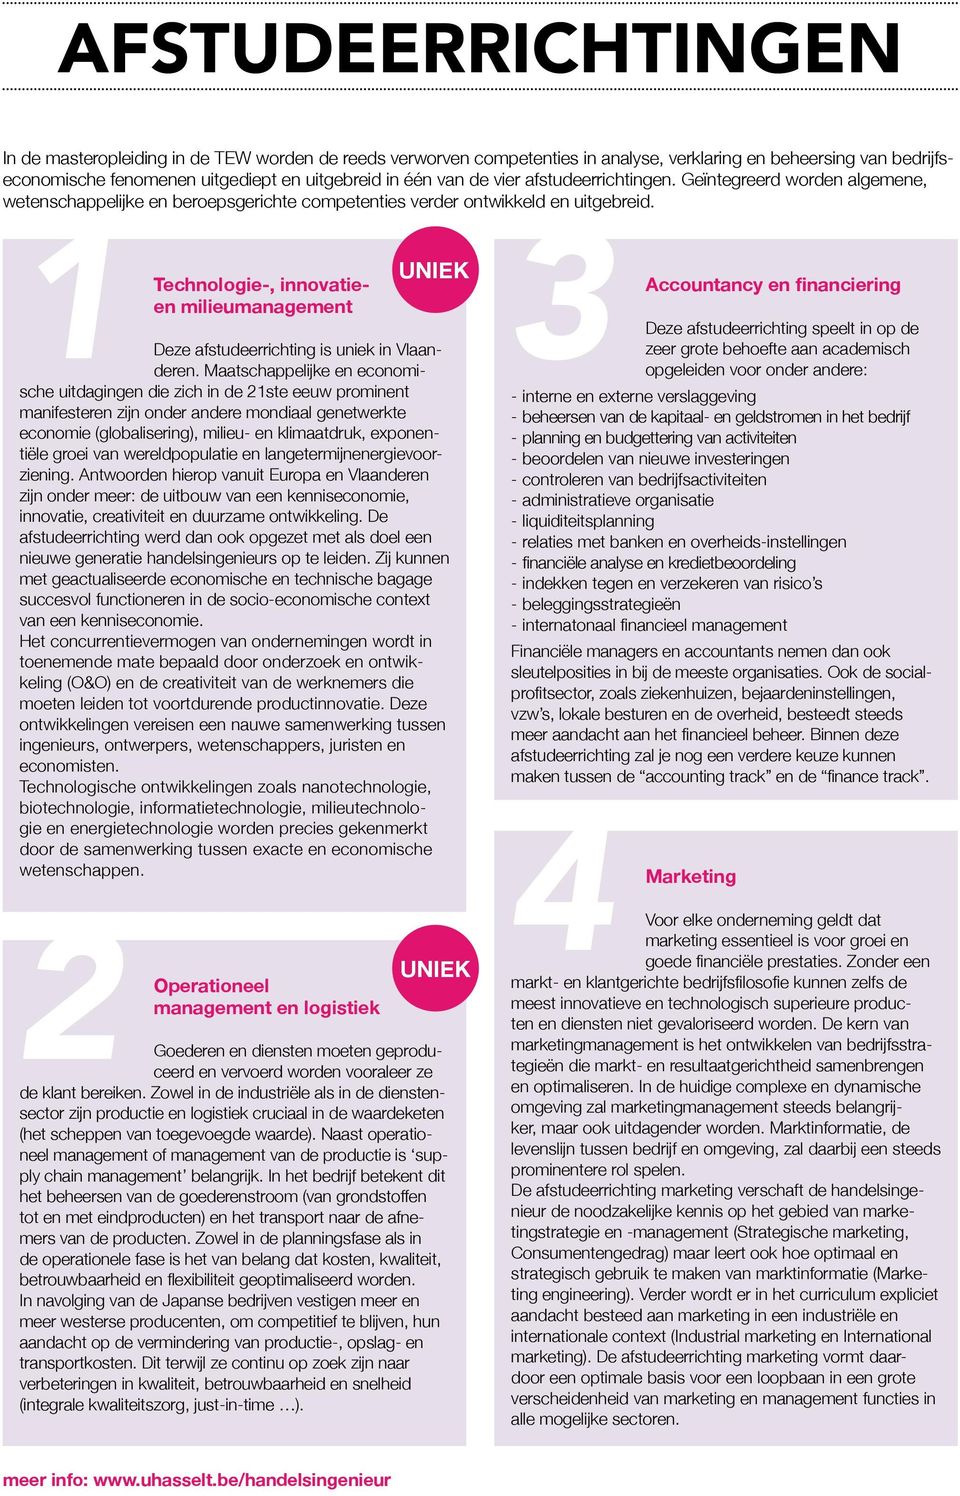 1 3 Technologie-, innovatieen milieumanagement UNIEK Deze afstudeerrichting is uniek in Vlaanderen.